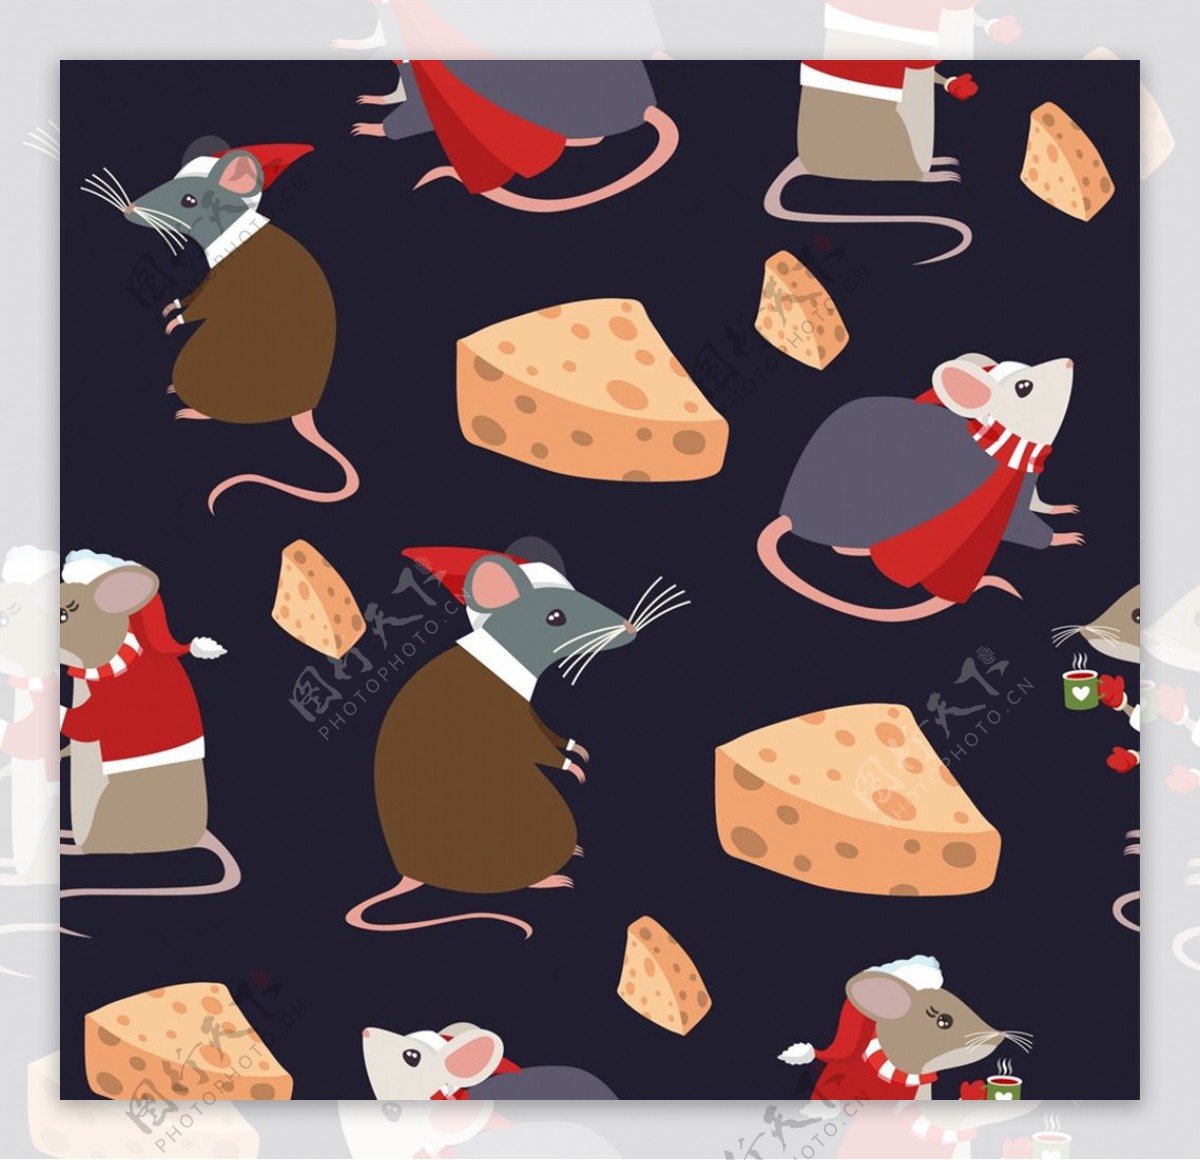 老鼠和奶酪背景图片